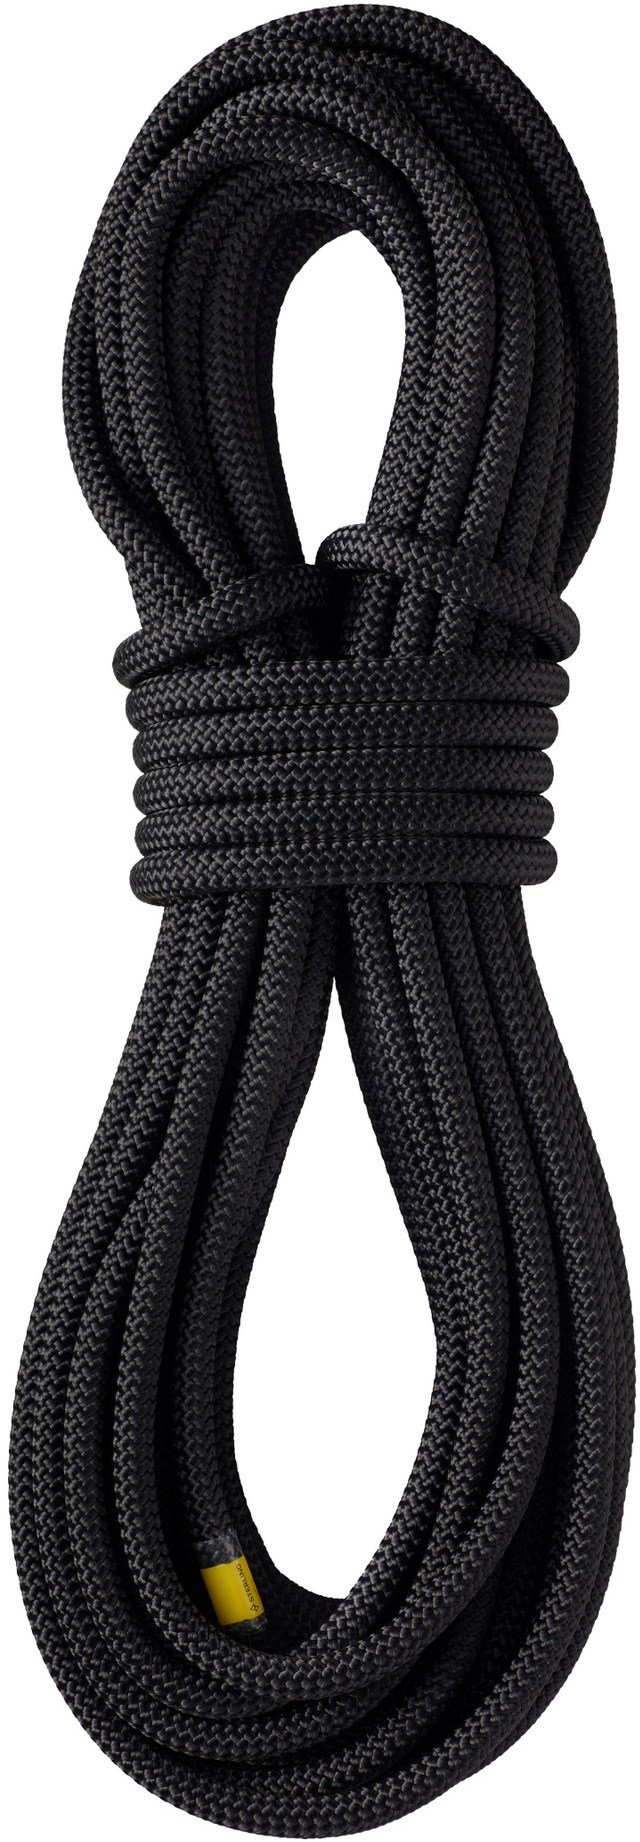 WorkPro 10 мм x 46 м несухая веревка Sterling, черный фотографии